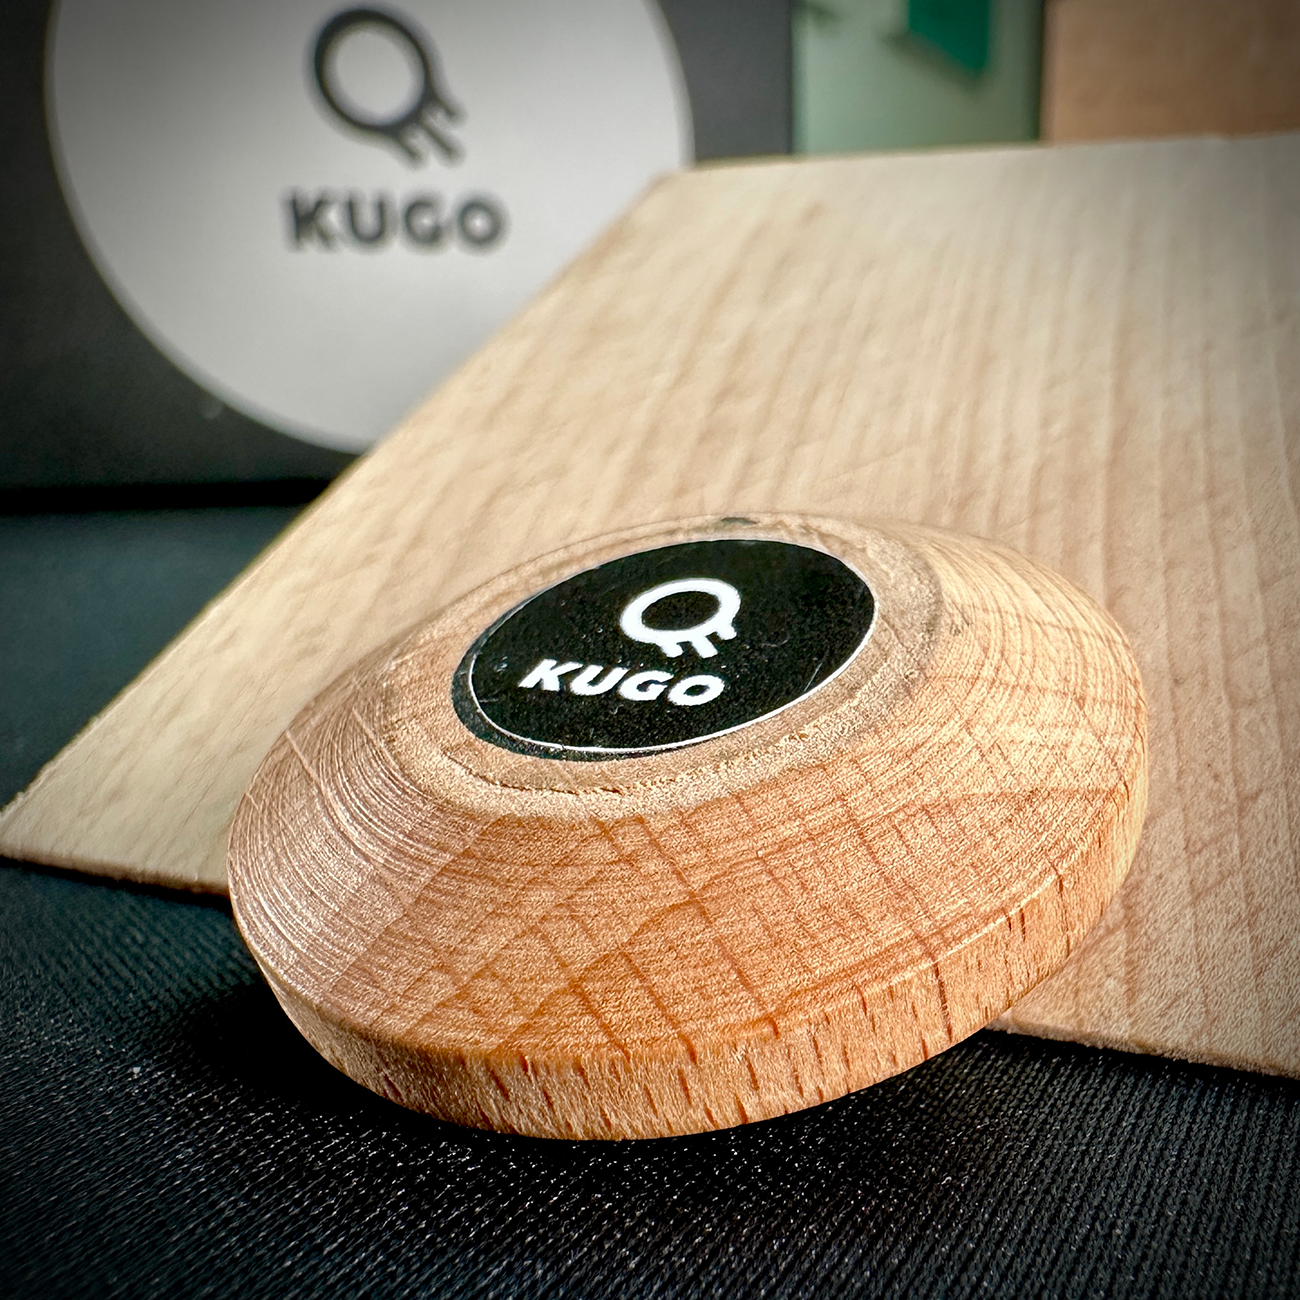 Kugo Puck Image © Board Game Review UK